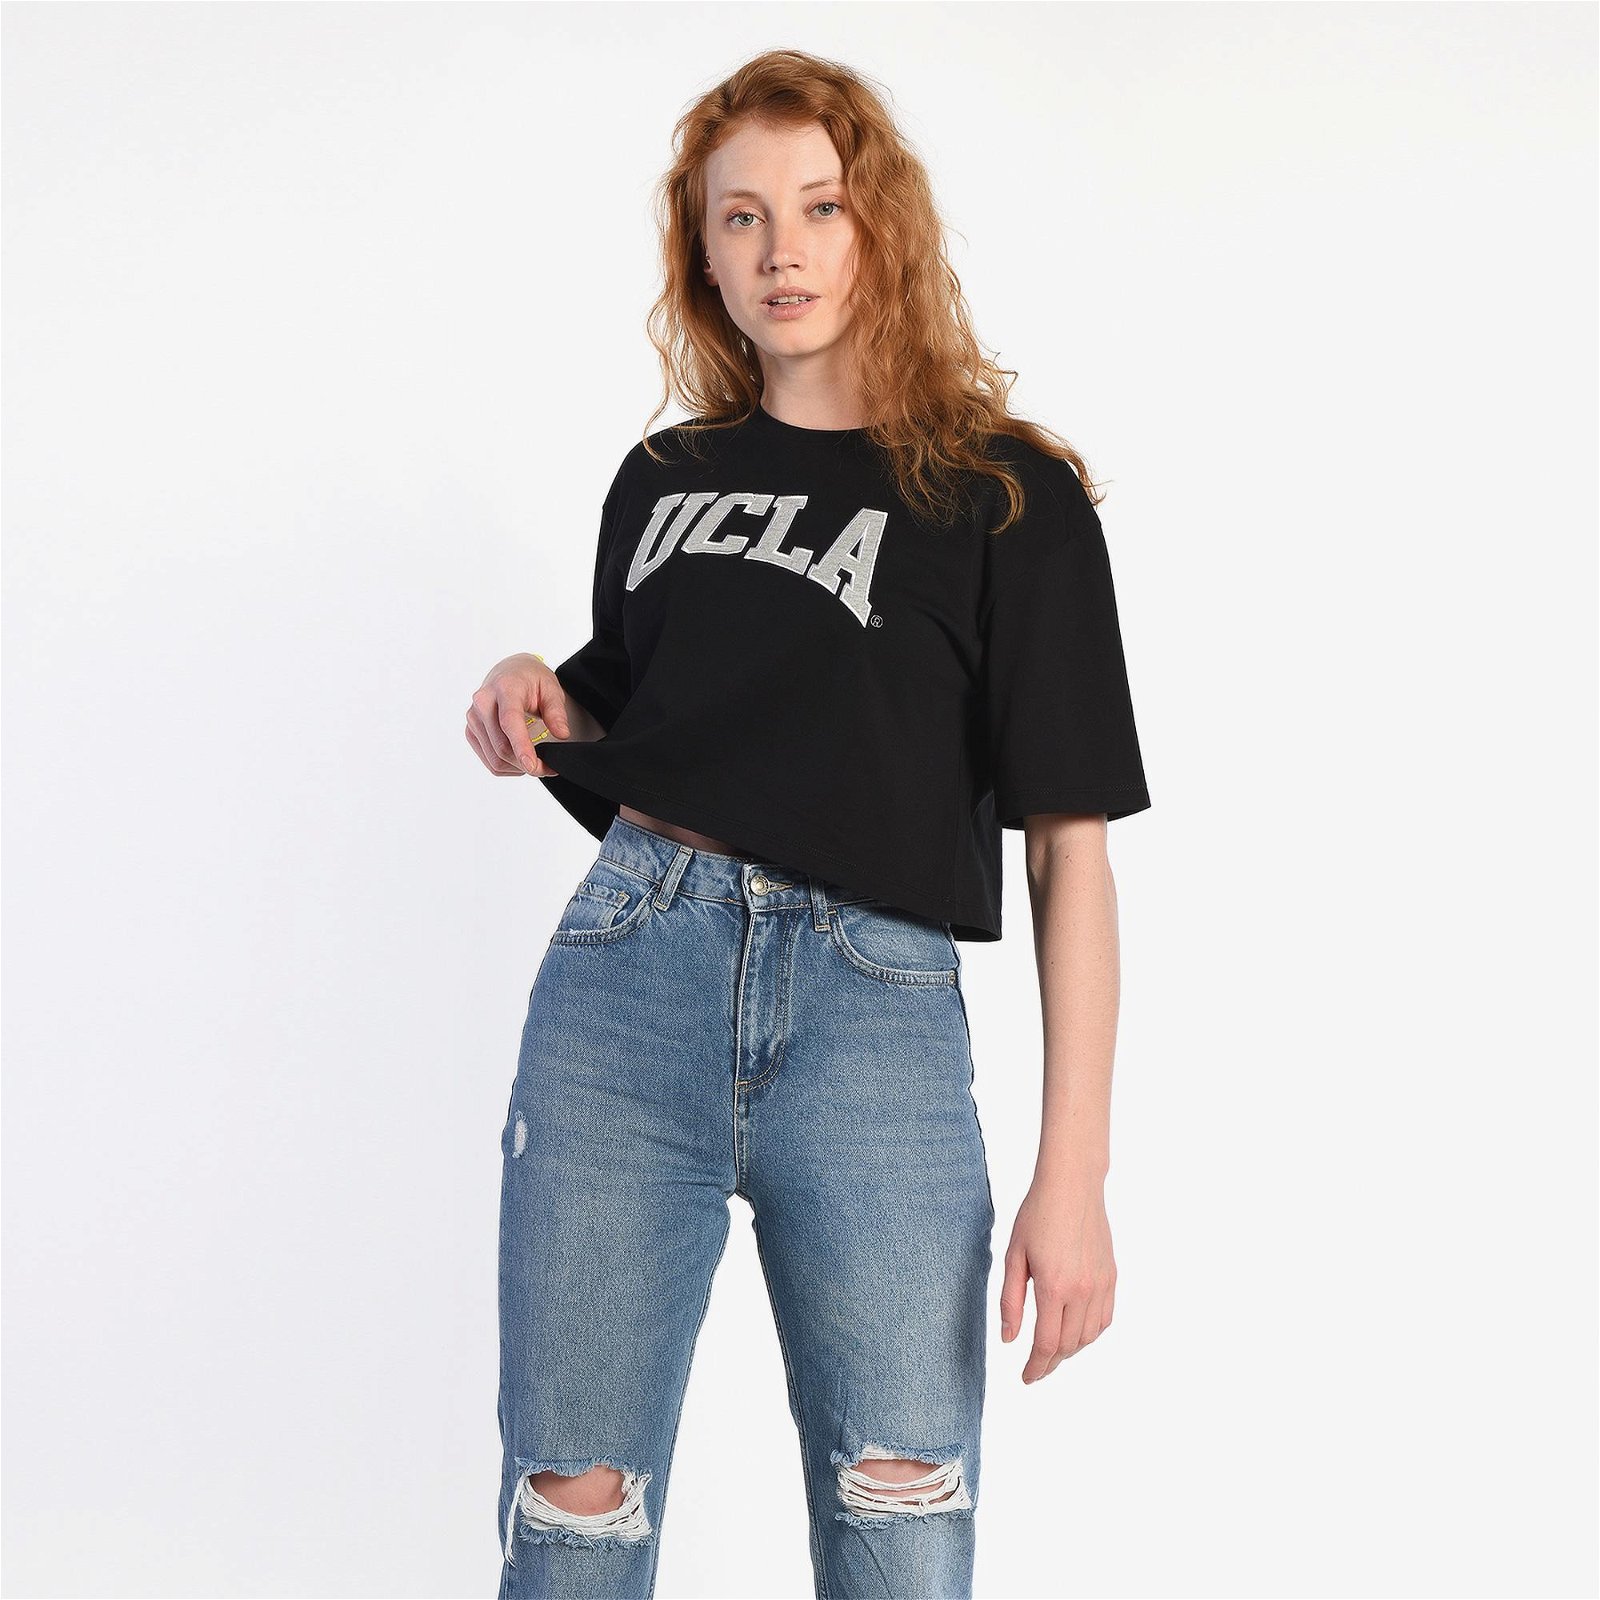 Ucla Helena Kadın Siyah T-Shirt